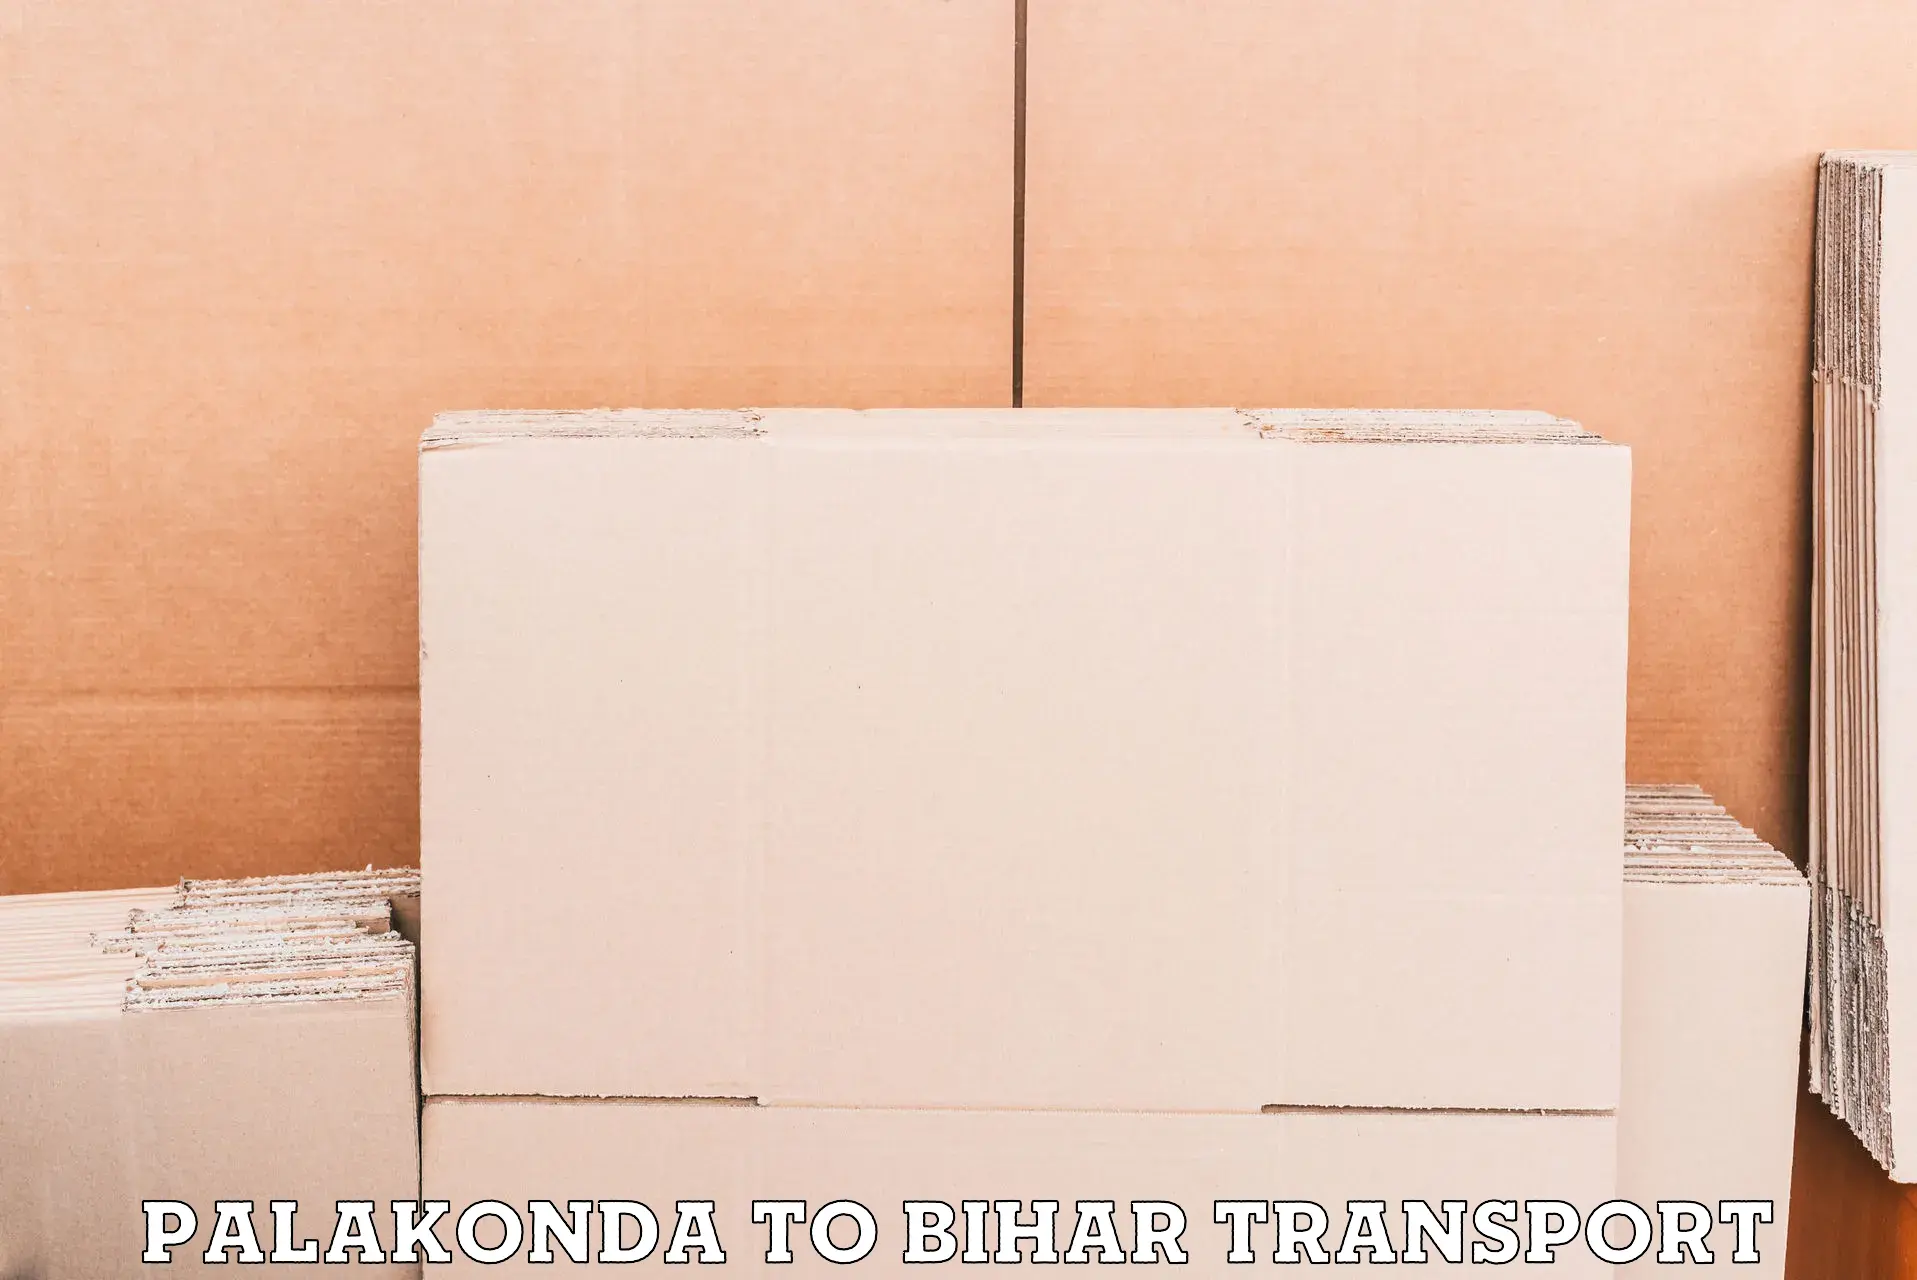 Material transport services Palakonda to Pupri